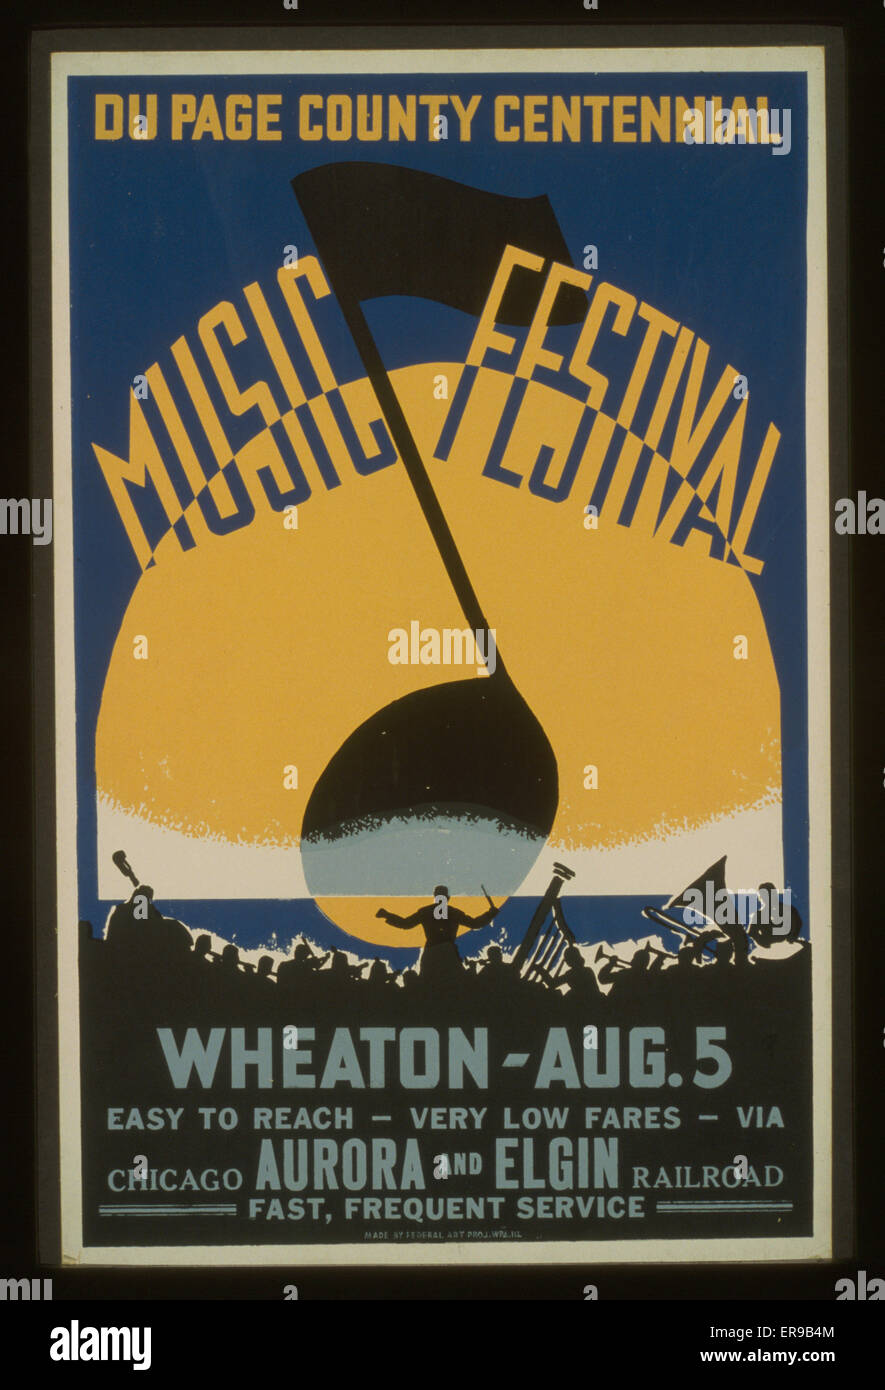 Festival de musique centenaire du Comté du page, Wheaton - août 5 Banque D'Images